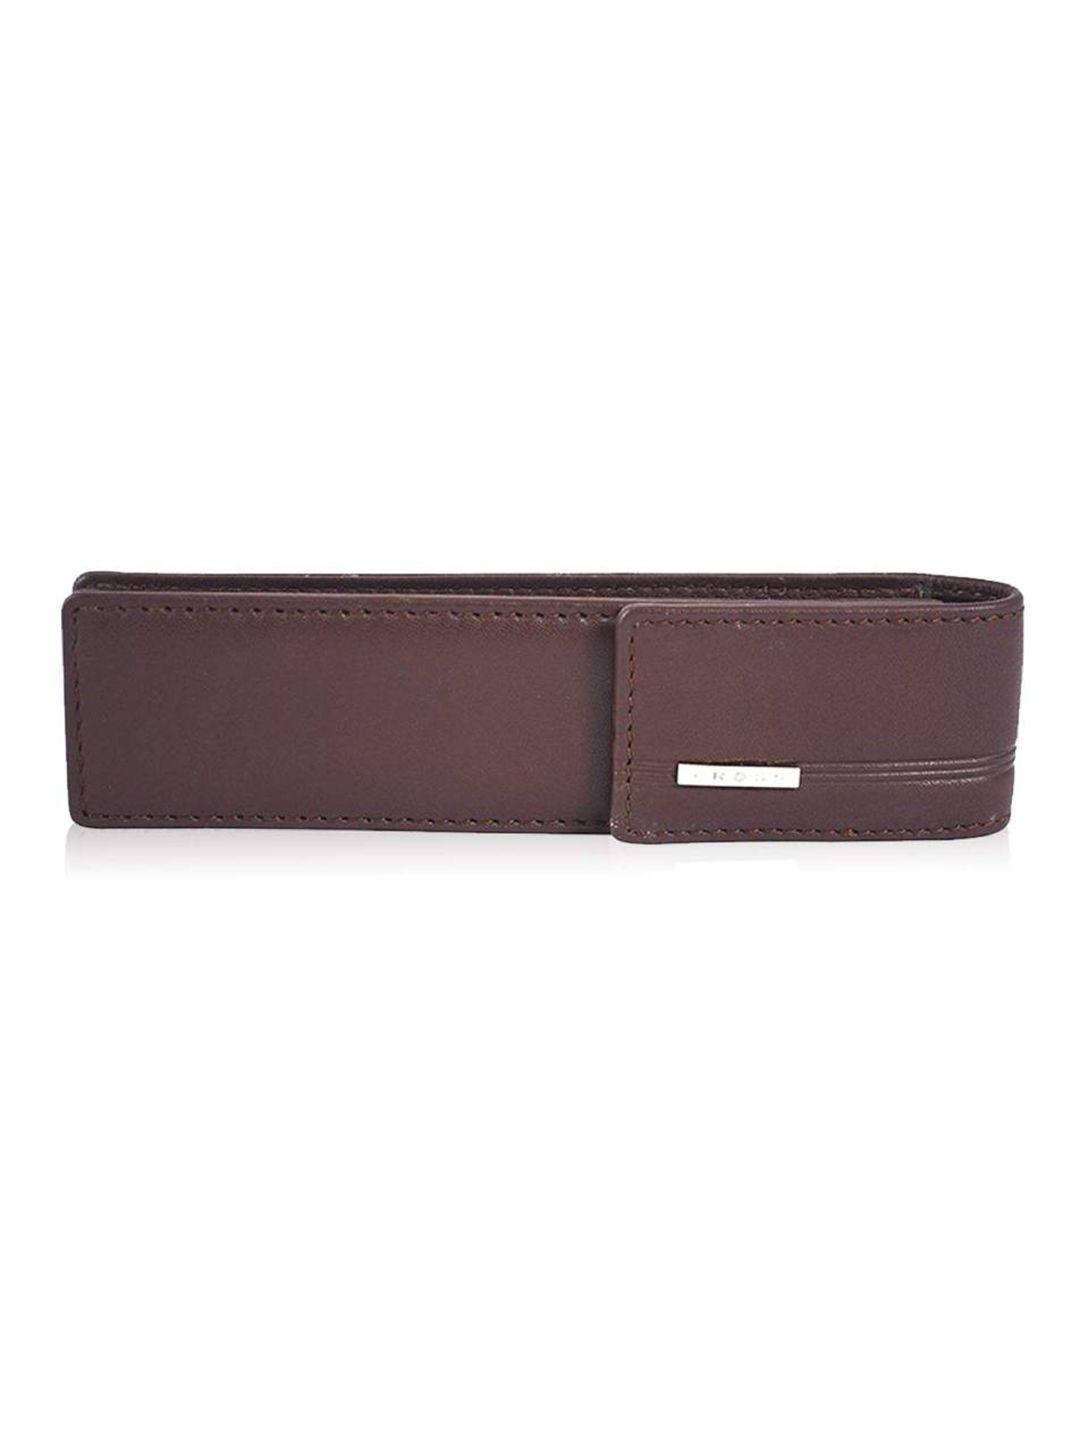 cross men brown leather two fold double pen case